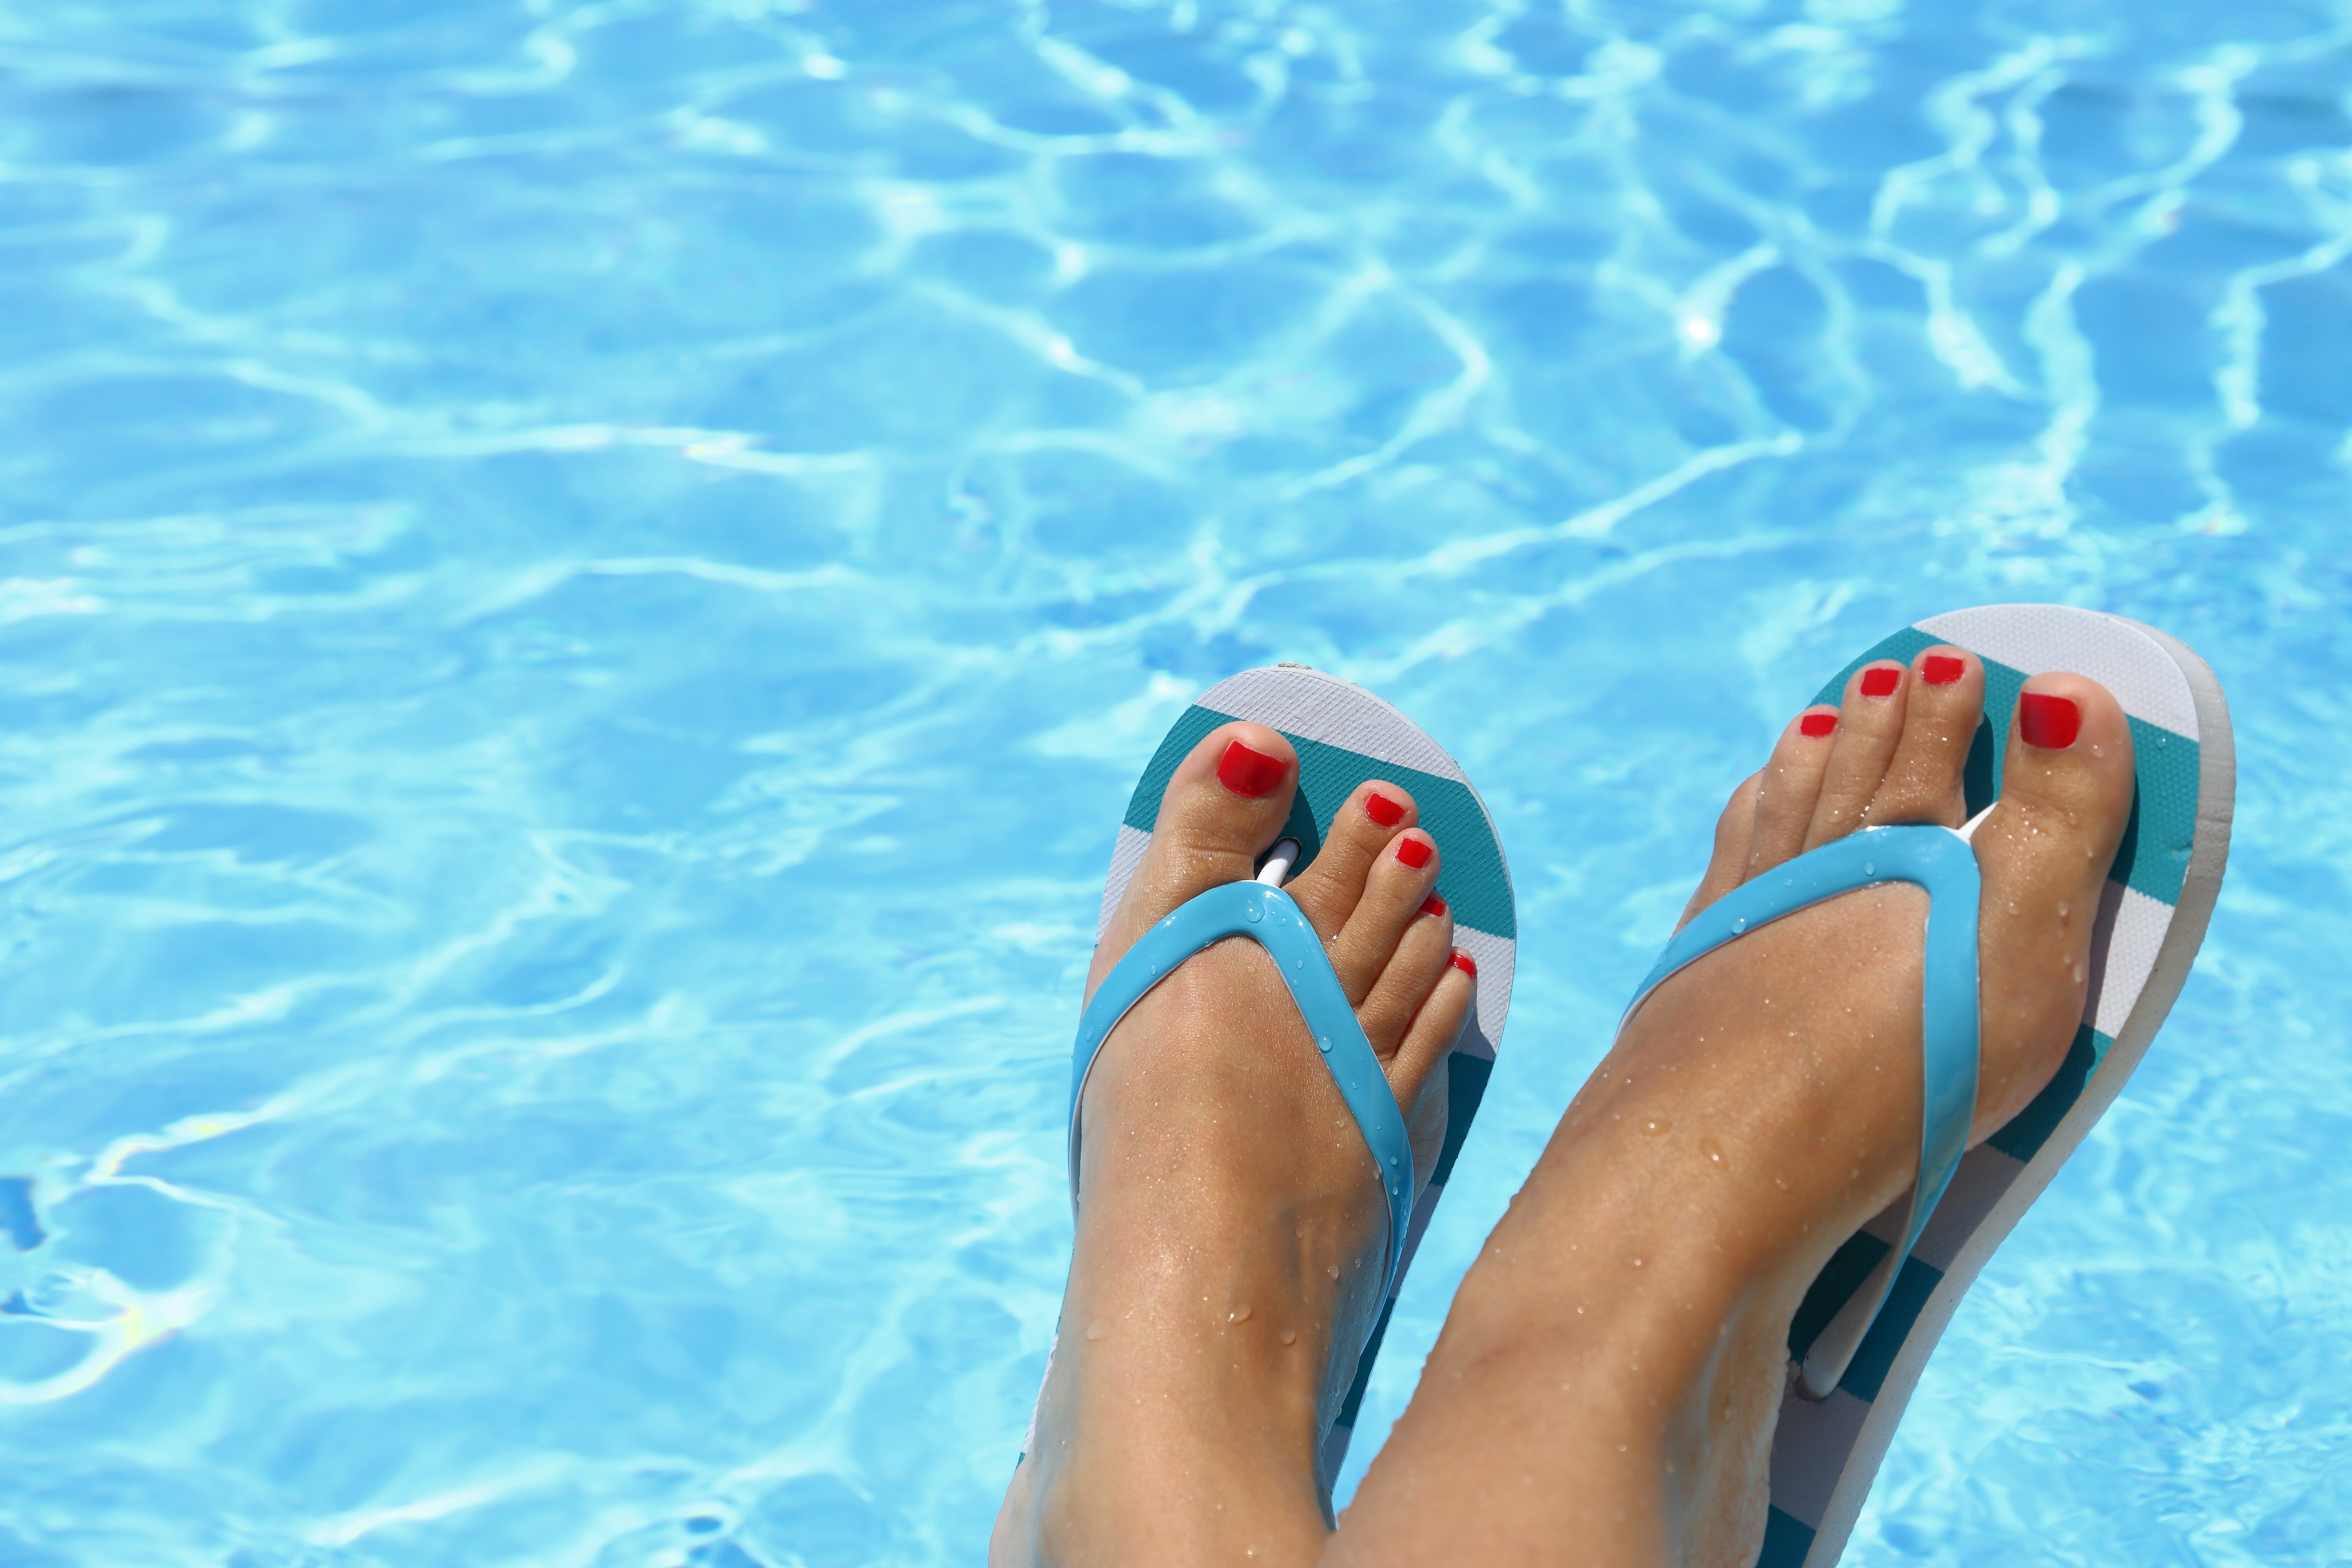 Пальчики ног женщины. Педикюр на море. Девушка с педикюром. Ножки в бассейне. Ступни в бассейне.